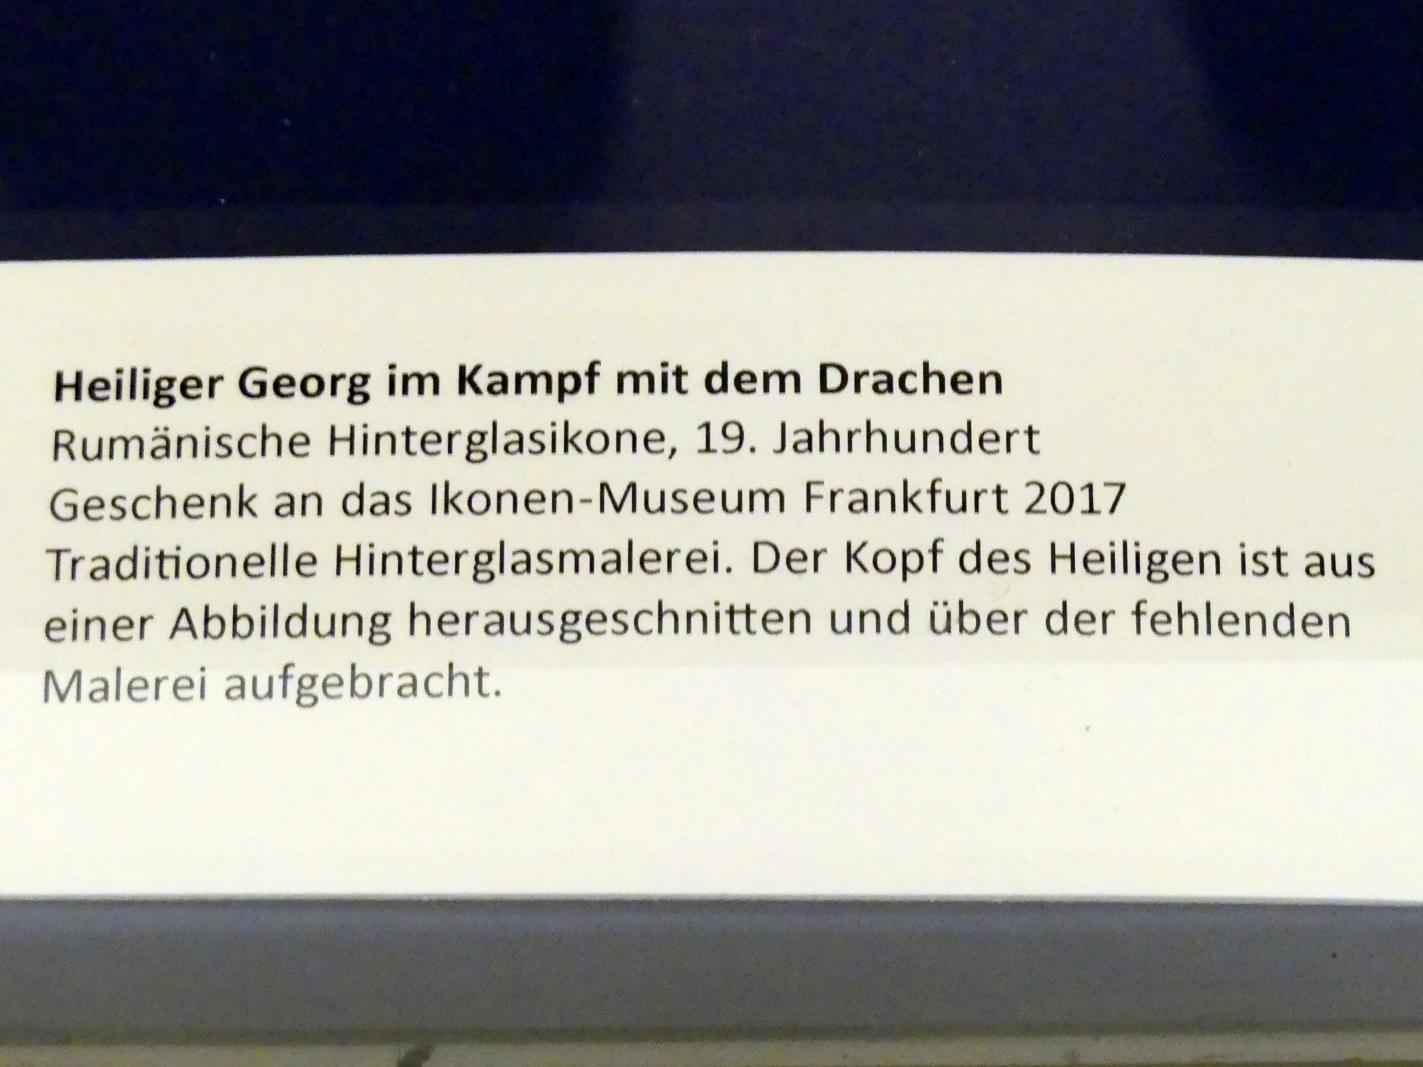 Heiliger Georg im Kampf mit dem Drachen, Frankfurt am Main, Ikonen-Museum, Obergeschoss, 19. Jhd., Bild 2/2